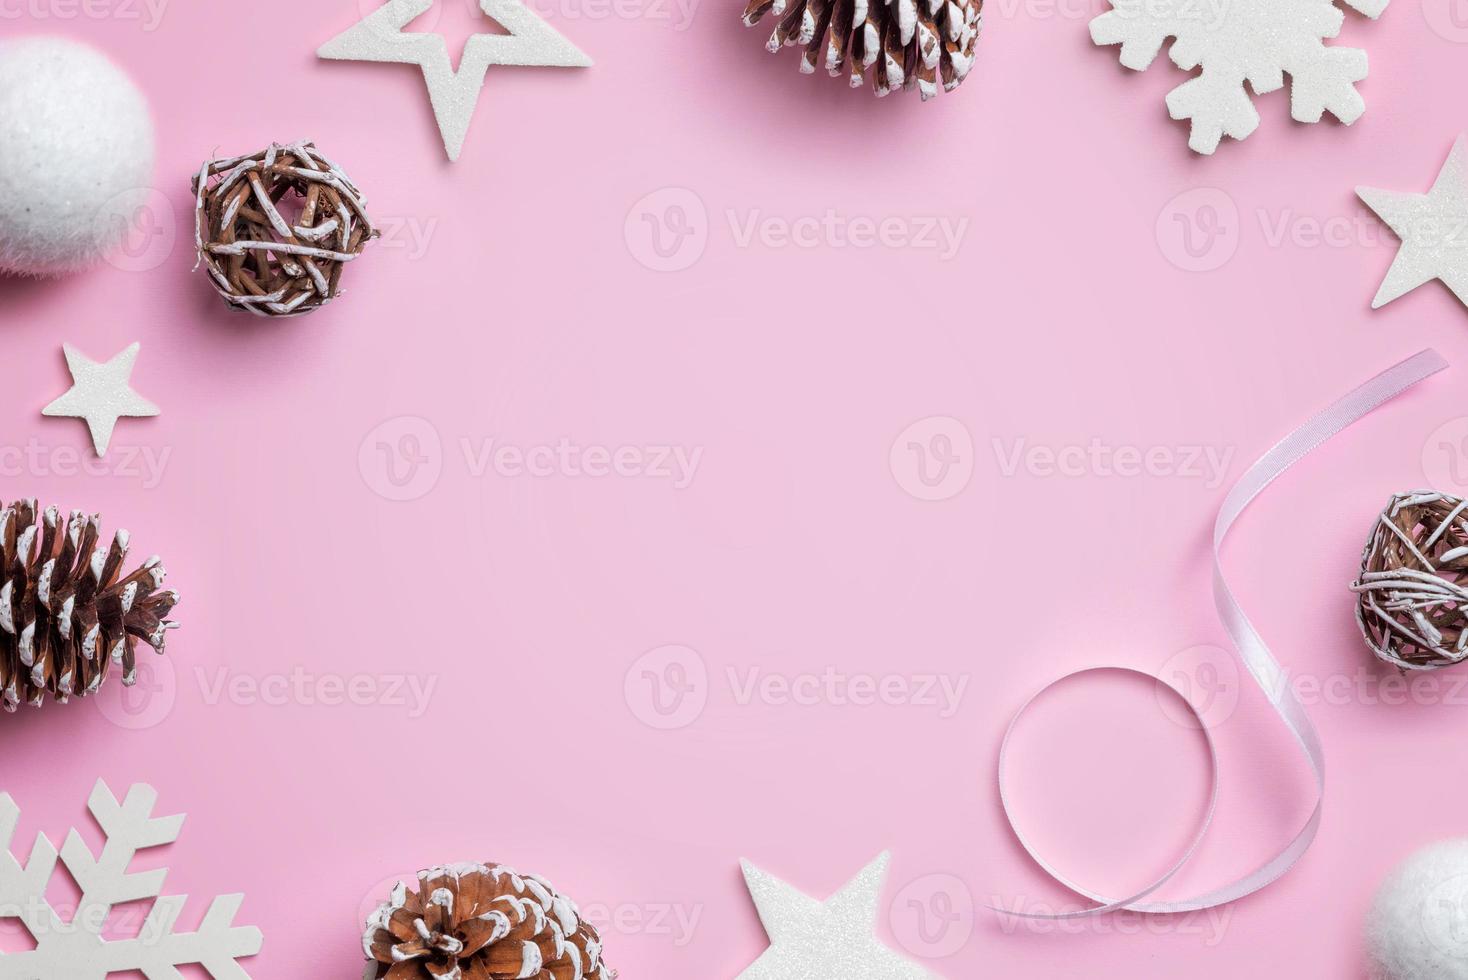 composición navideña en escritorio rosa. estrellas blancas, bolas, copos de nieve y conos. fondo de navidad. vista superior, plano foto